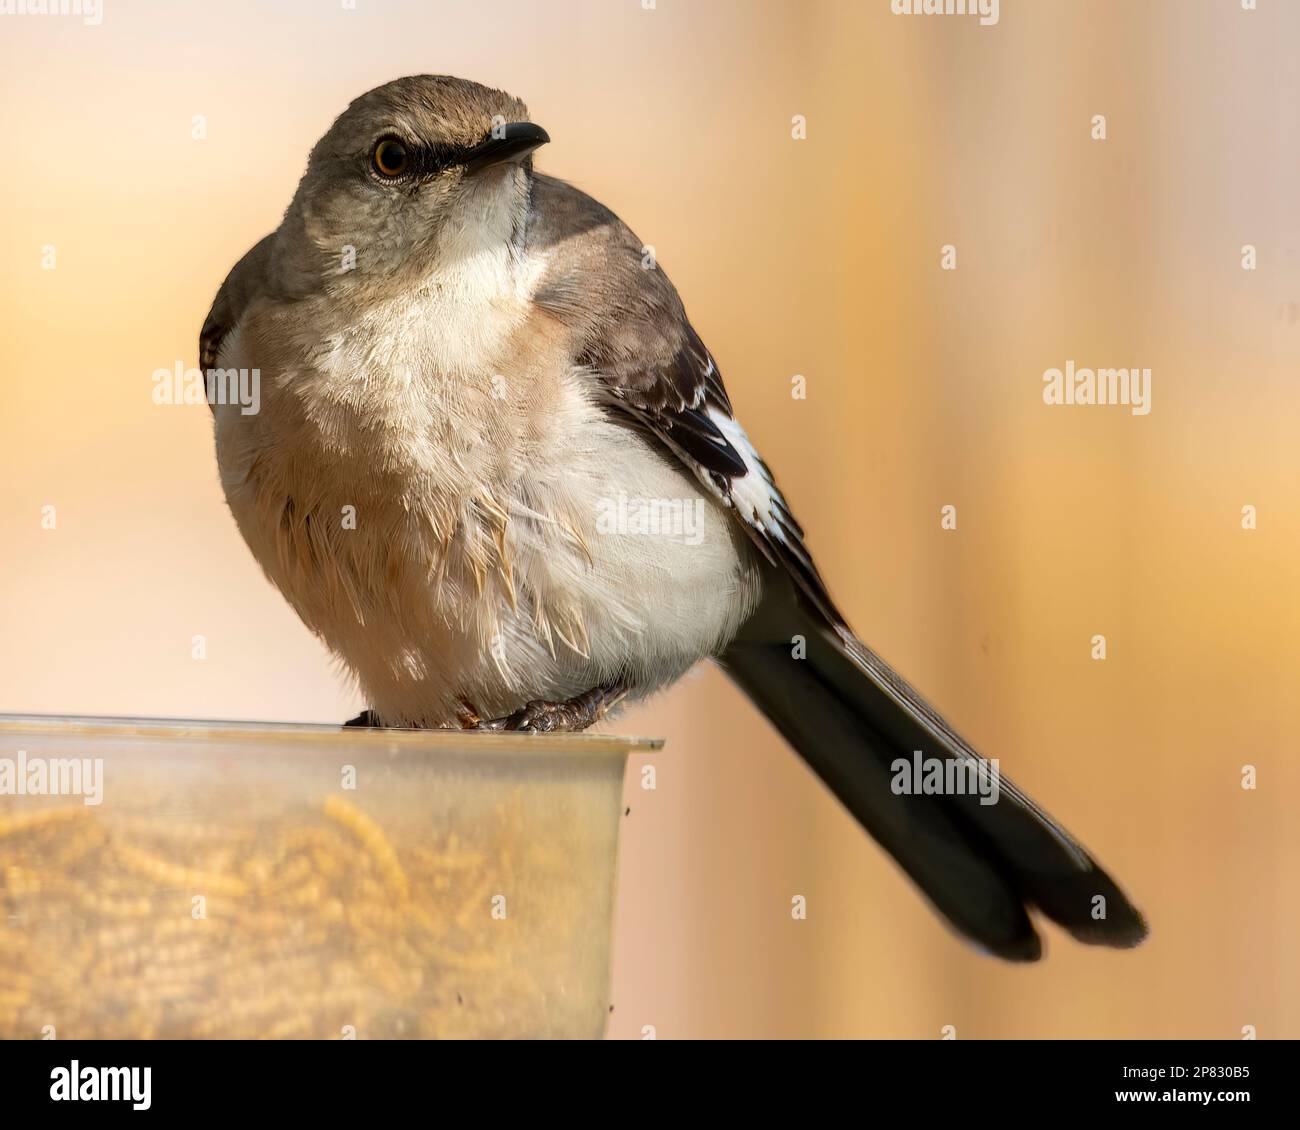 Mockingbird encaramado en un comedero de pájaros mirando a la derecha. Foto de stock